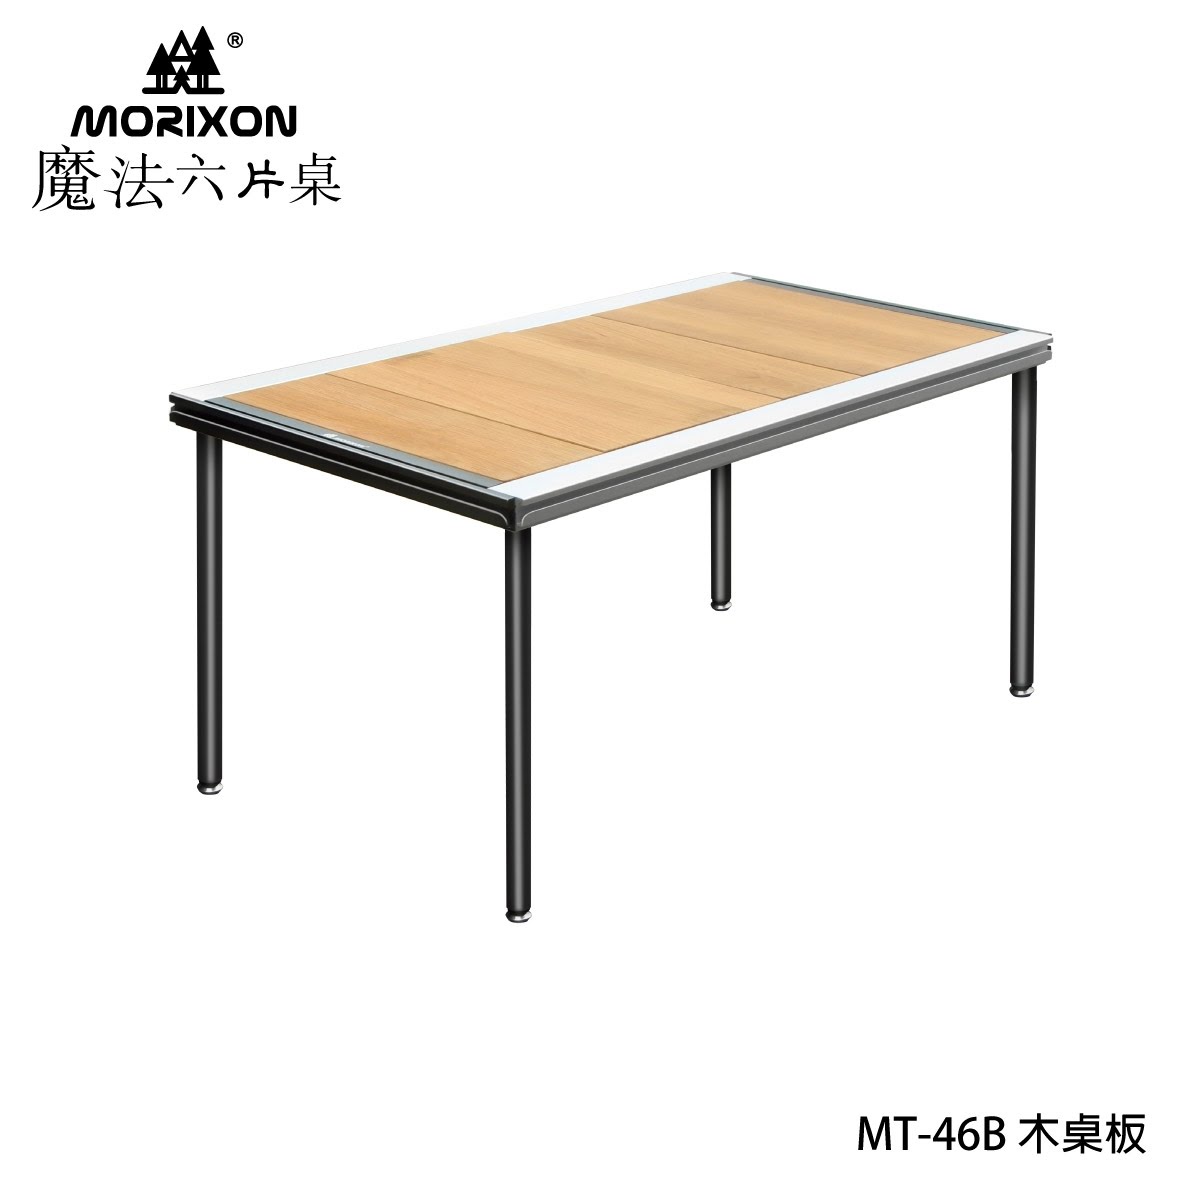 【露營好夥伴】Morixon-魔法六片桌 MT-46B 橡木桌板 露營桌 拼接桌 野餐桌 摺疊桌 超薄桌框 超具質感